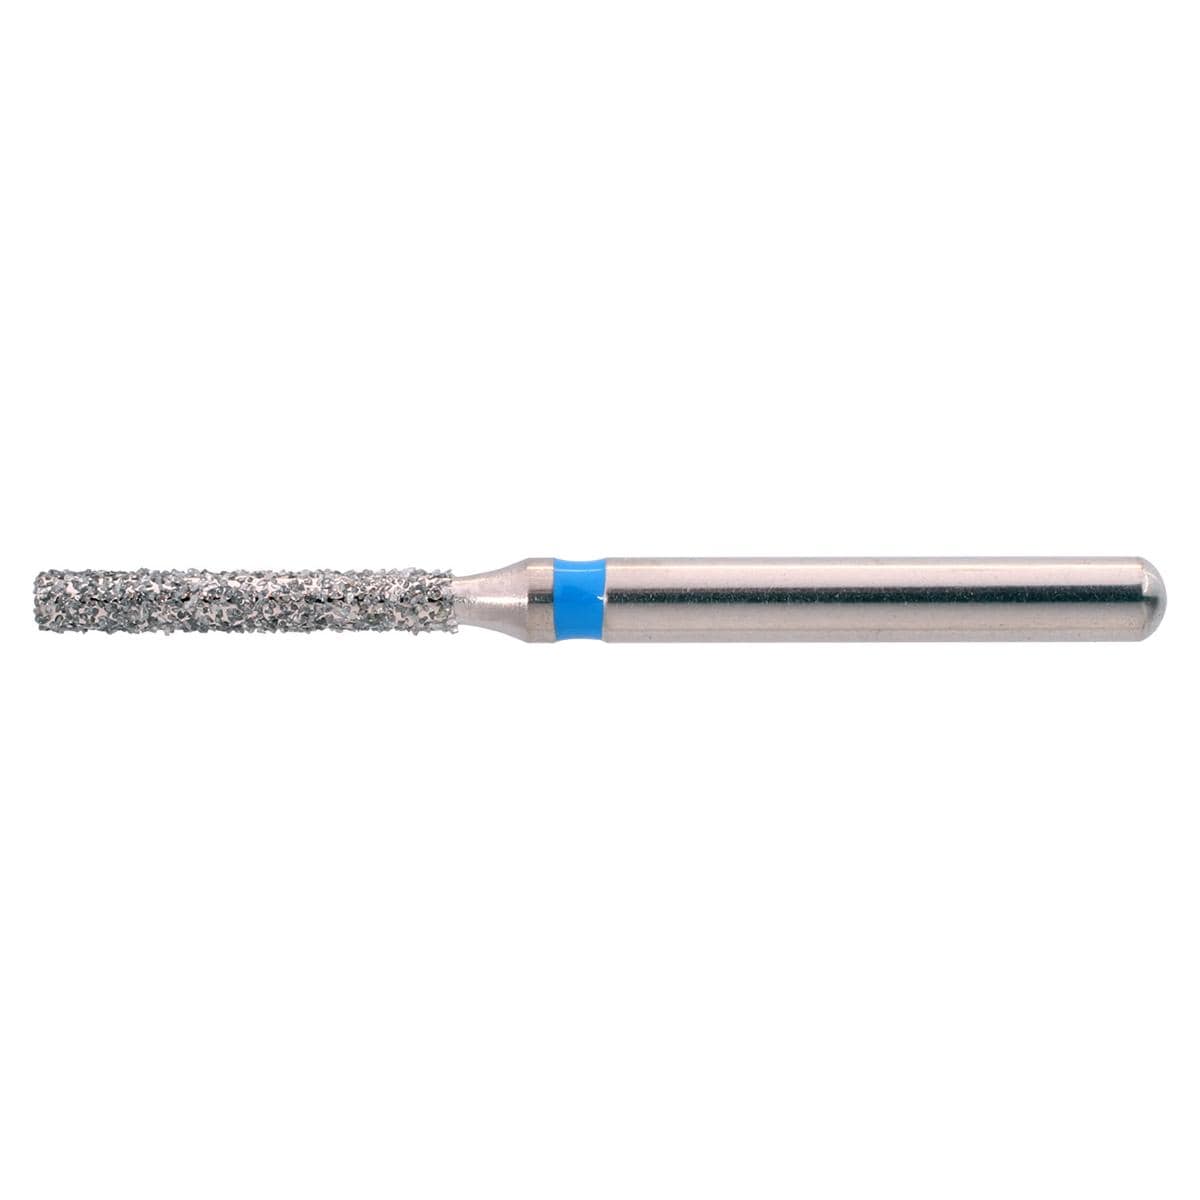 NeoDiamond FG, Form 111, Zylinder flach - ISO 010, mittel (blau), Packung 10 Stück